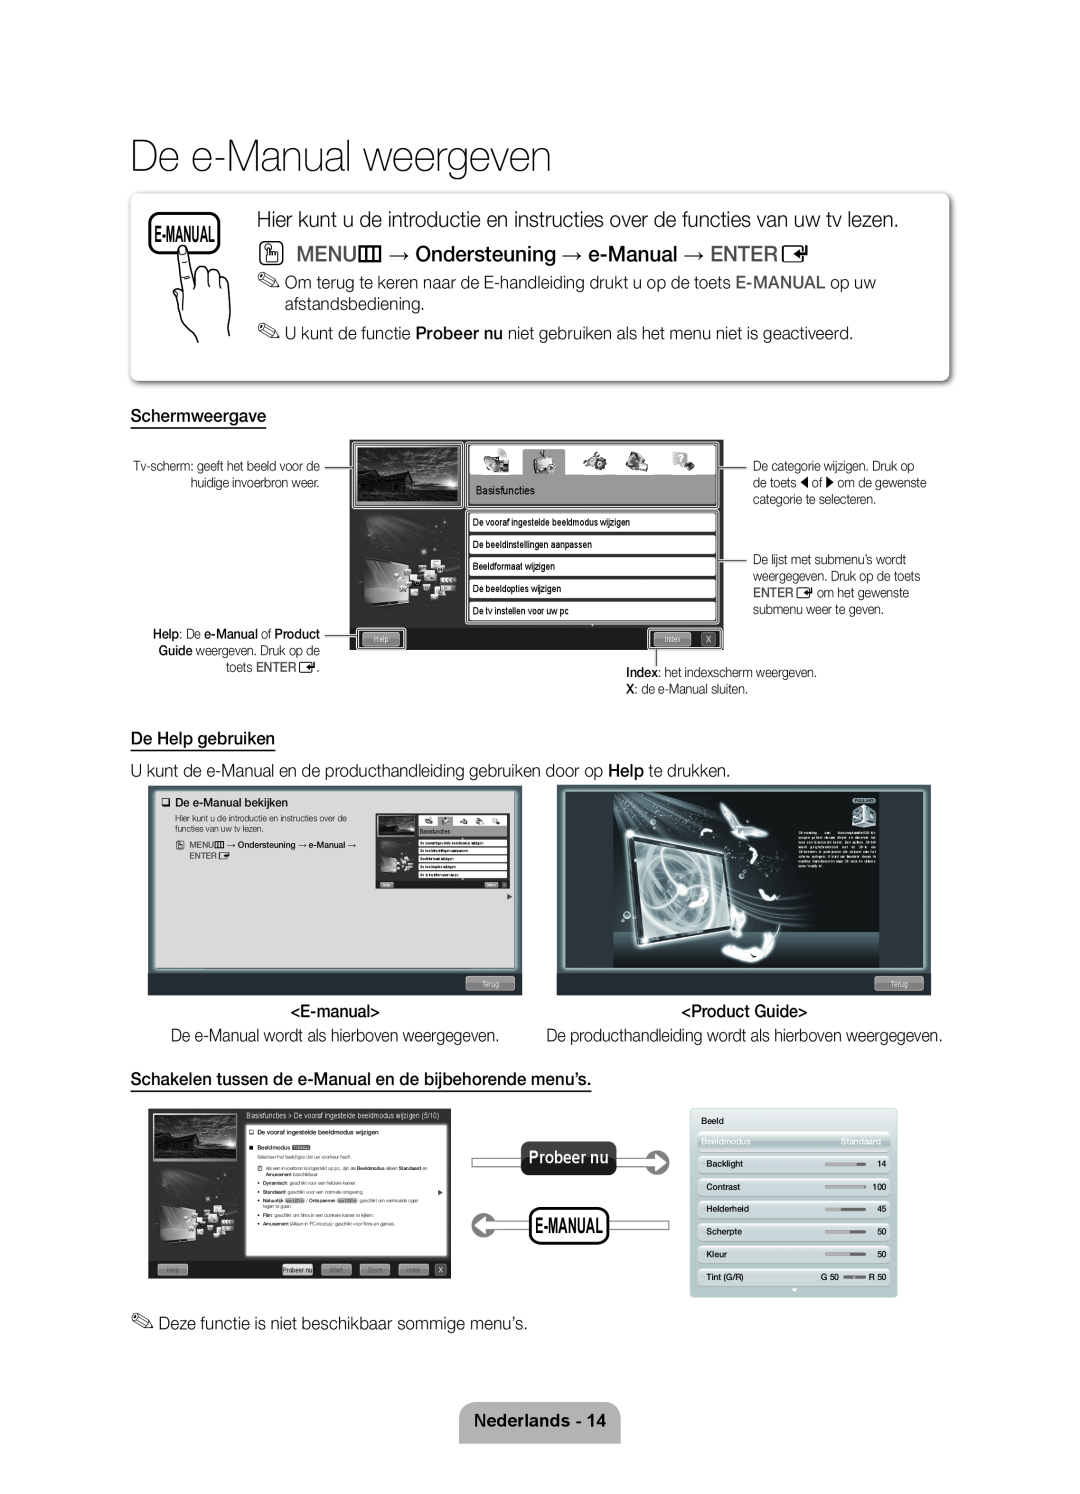 Samsung UE46D7000LSXZF De e-Manual weergeven, O MENU m → Ondersteuning → e-Manual → ENTER E, E-Manual, Nederlands, Enter E 